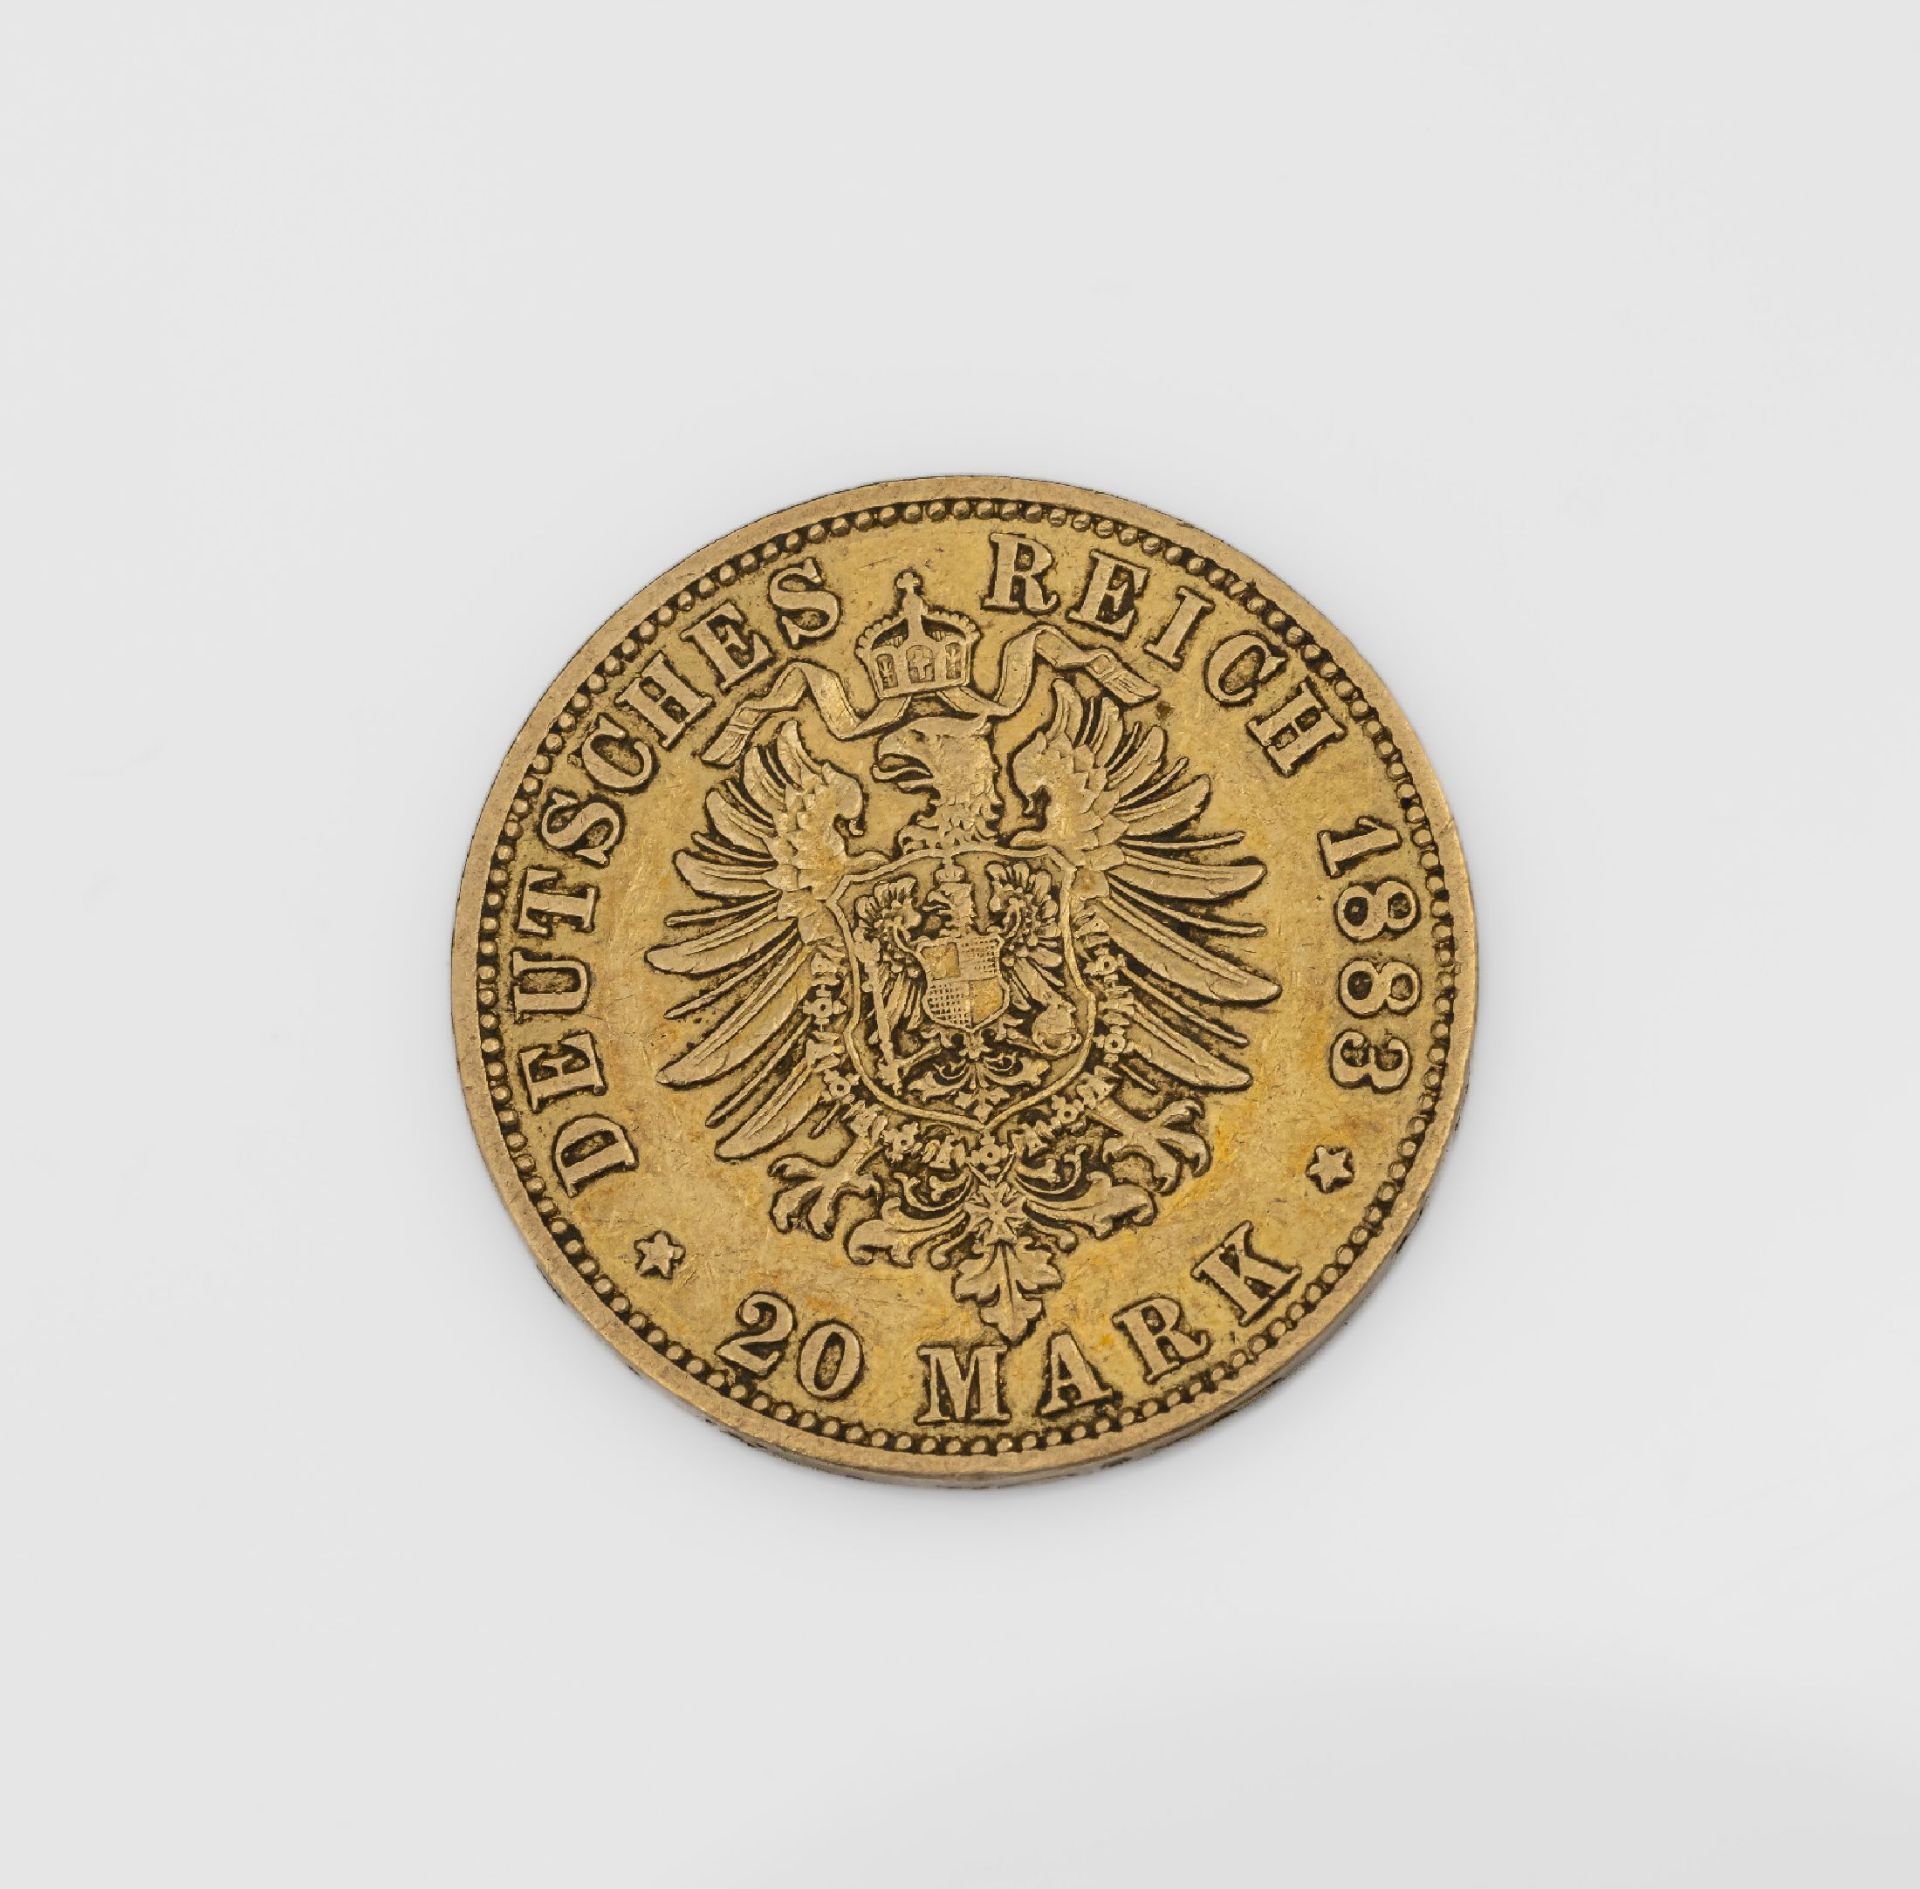 Goldmünze 20 Mark Deutsches Reich 1883, Wilhelm - Image 2 of 2